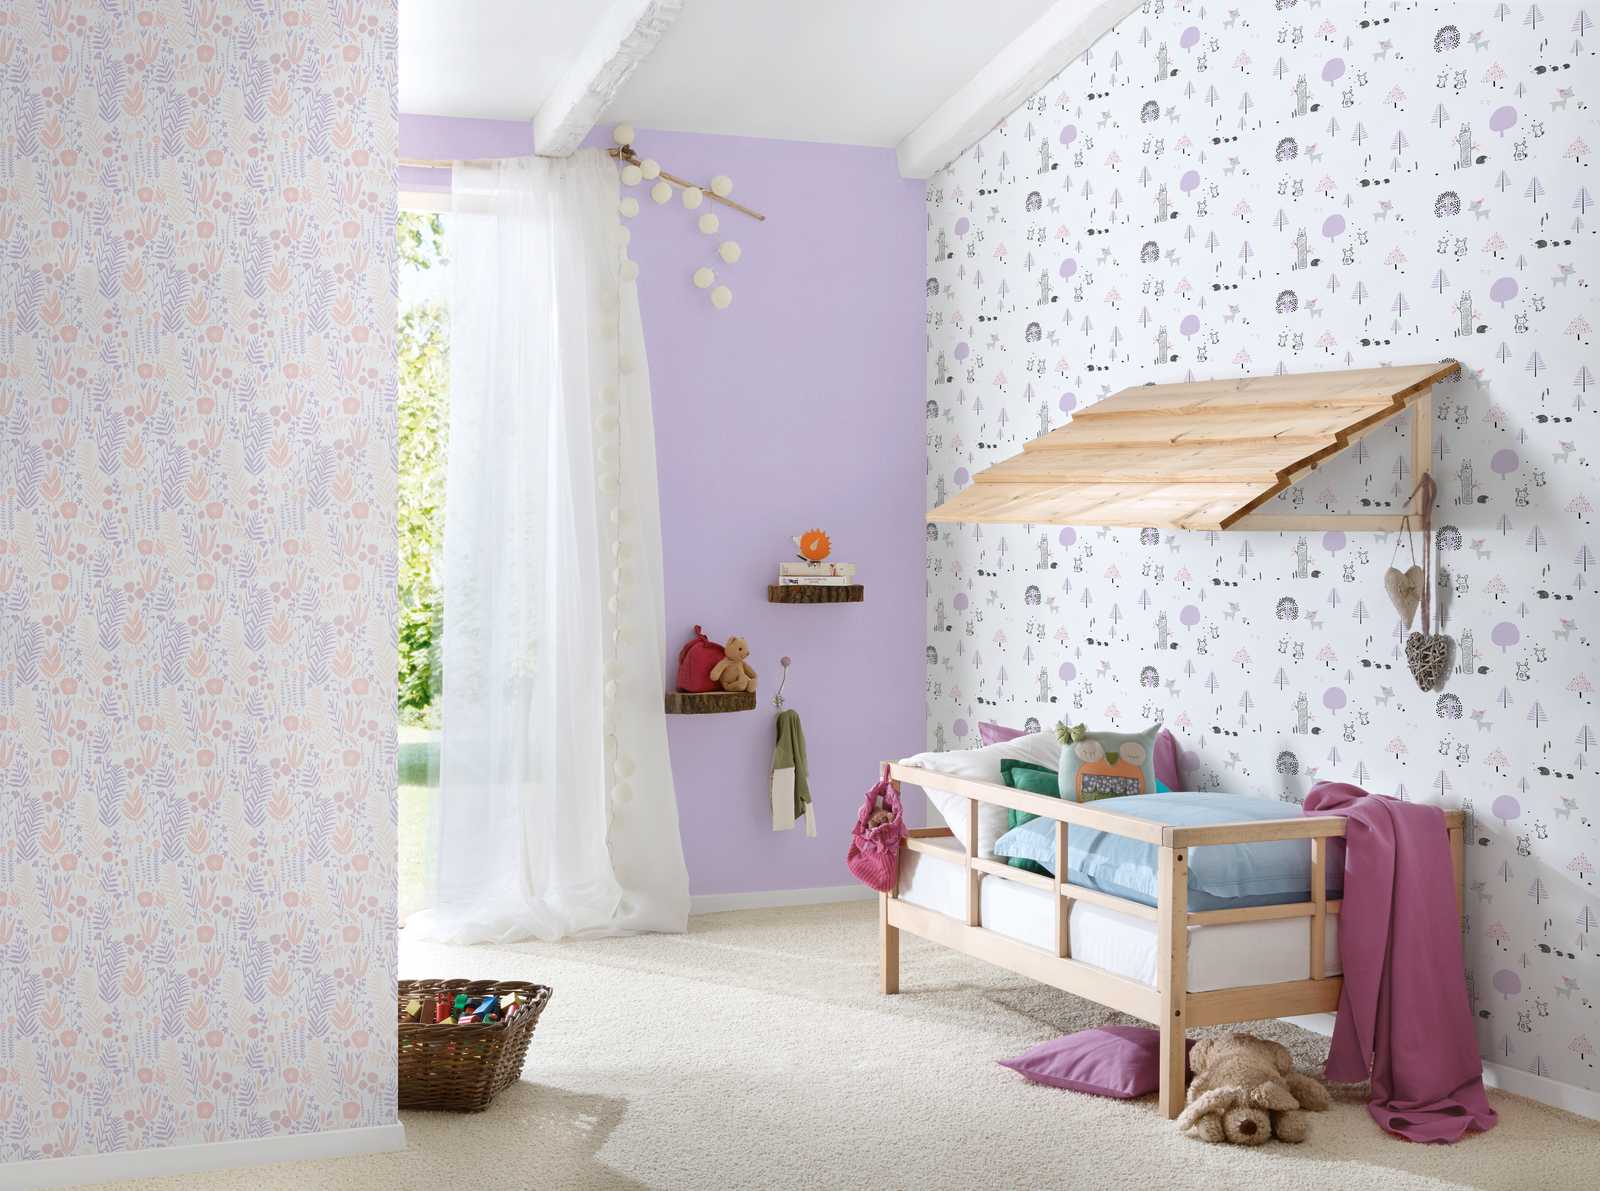             Plantas de papel pintado para la habitación de las niñas - morado, rosa, blanco
        